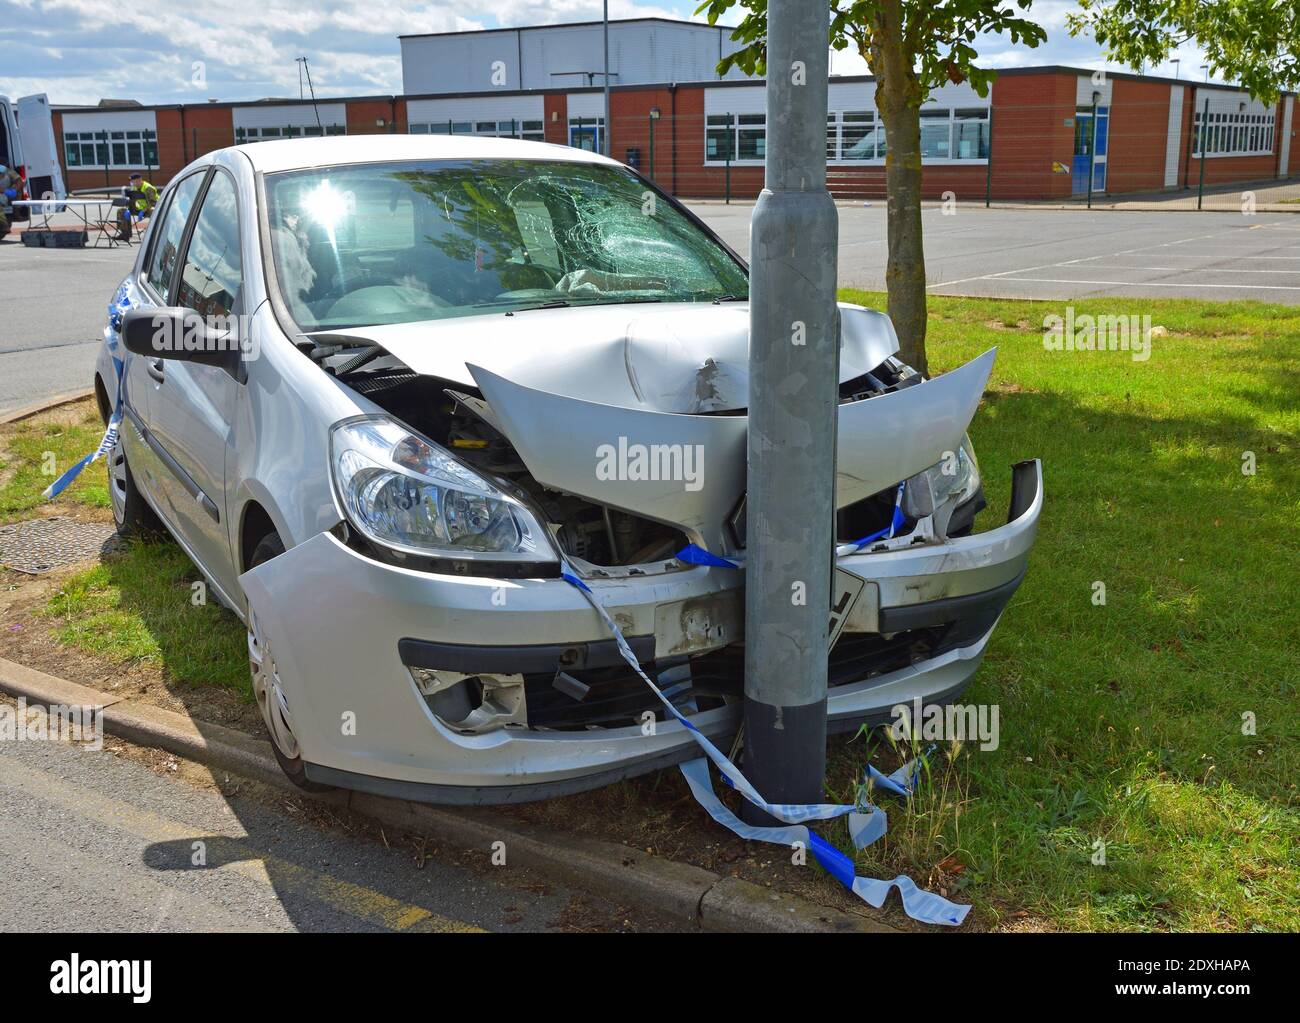 La voiture s'est écrasée dans le lampadaire près de la sortie du parking. Banque D'Images